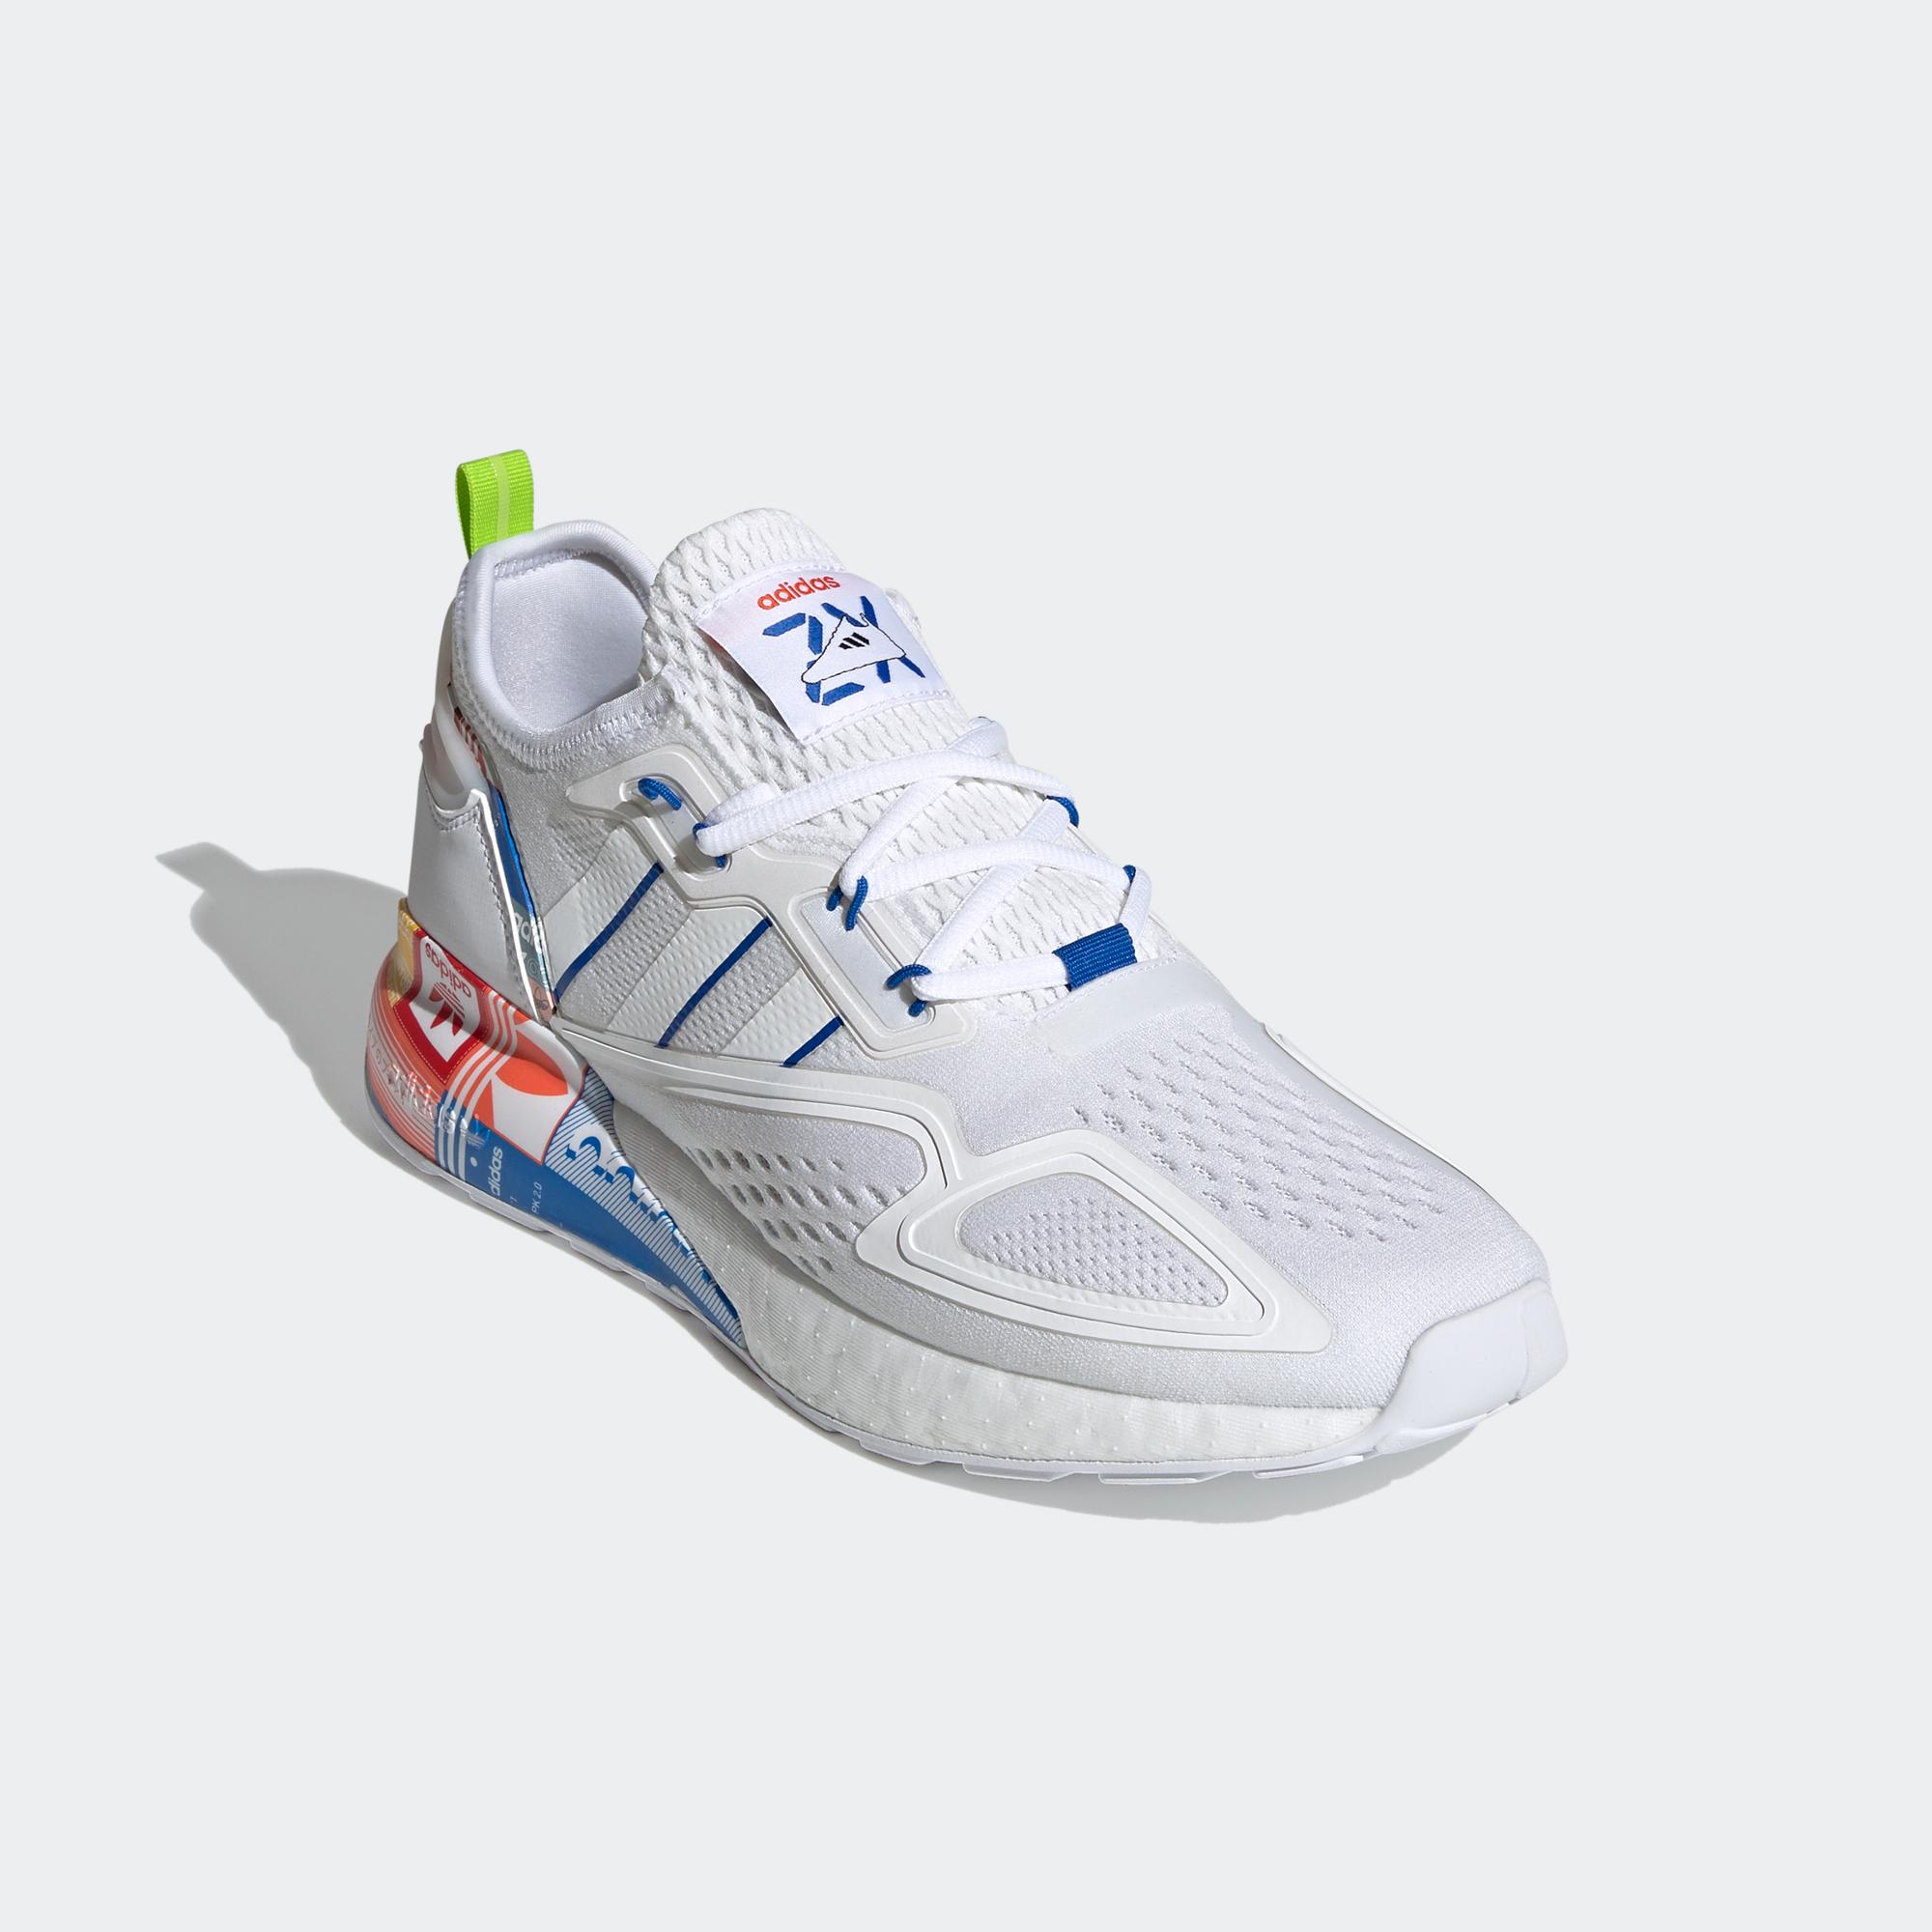 ZX 2K BOOST 運動鞋- 白色| 男子| adidas(愛迪達)香港官方網上商店